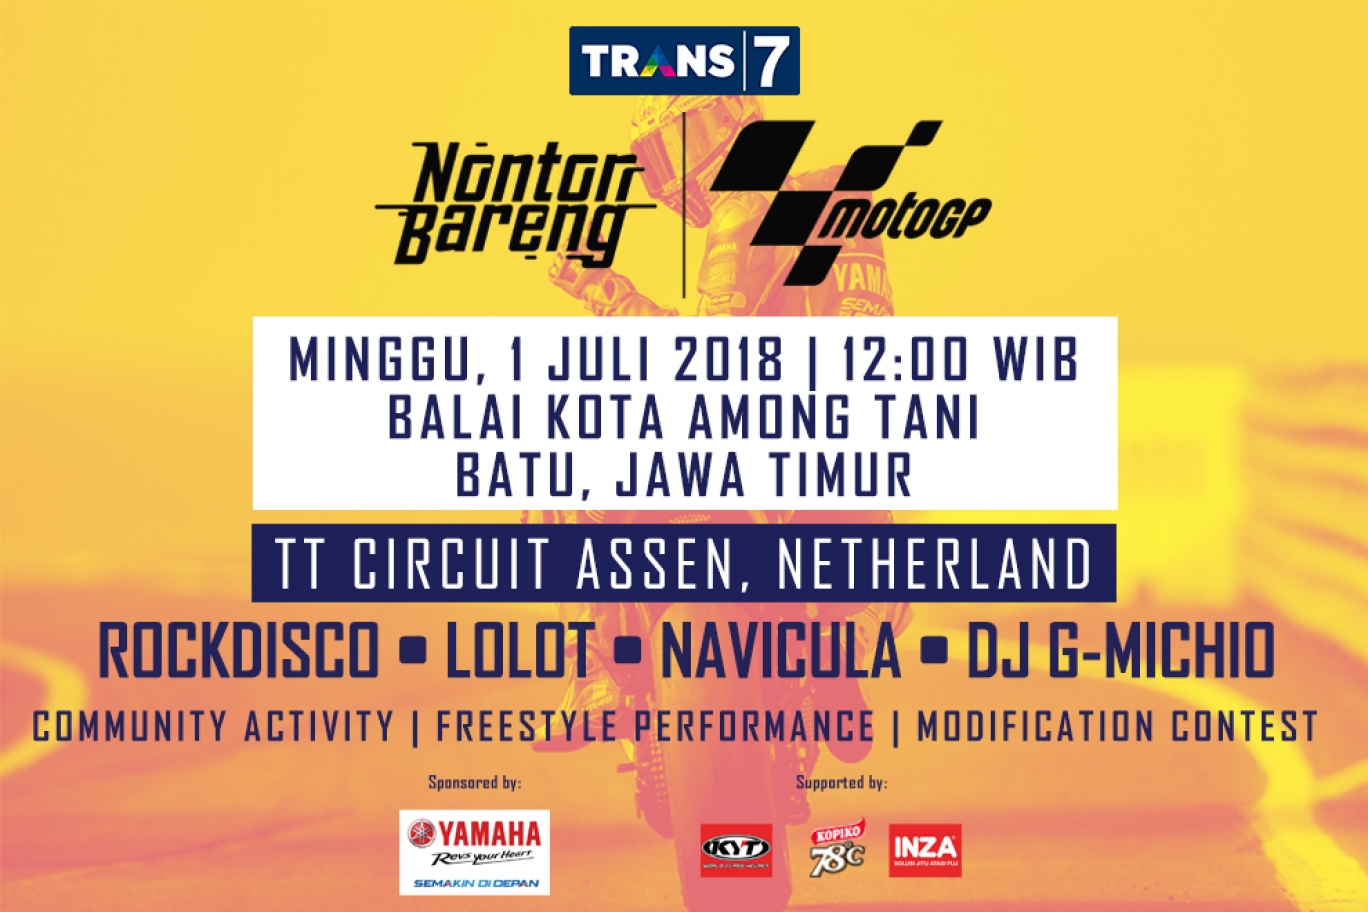 TRANS7 Nonton Bareng MotoGP 2018 Batu